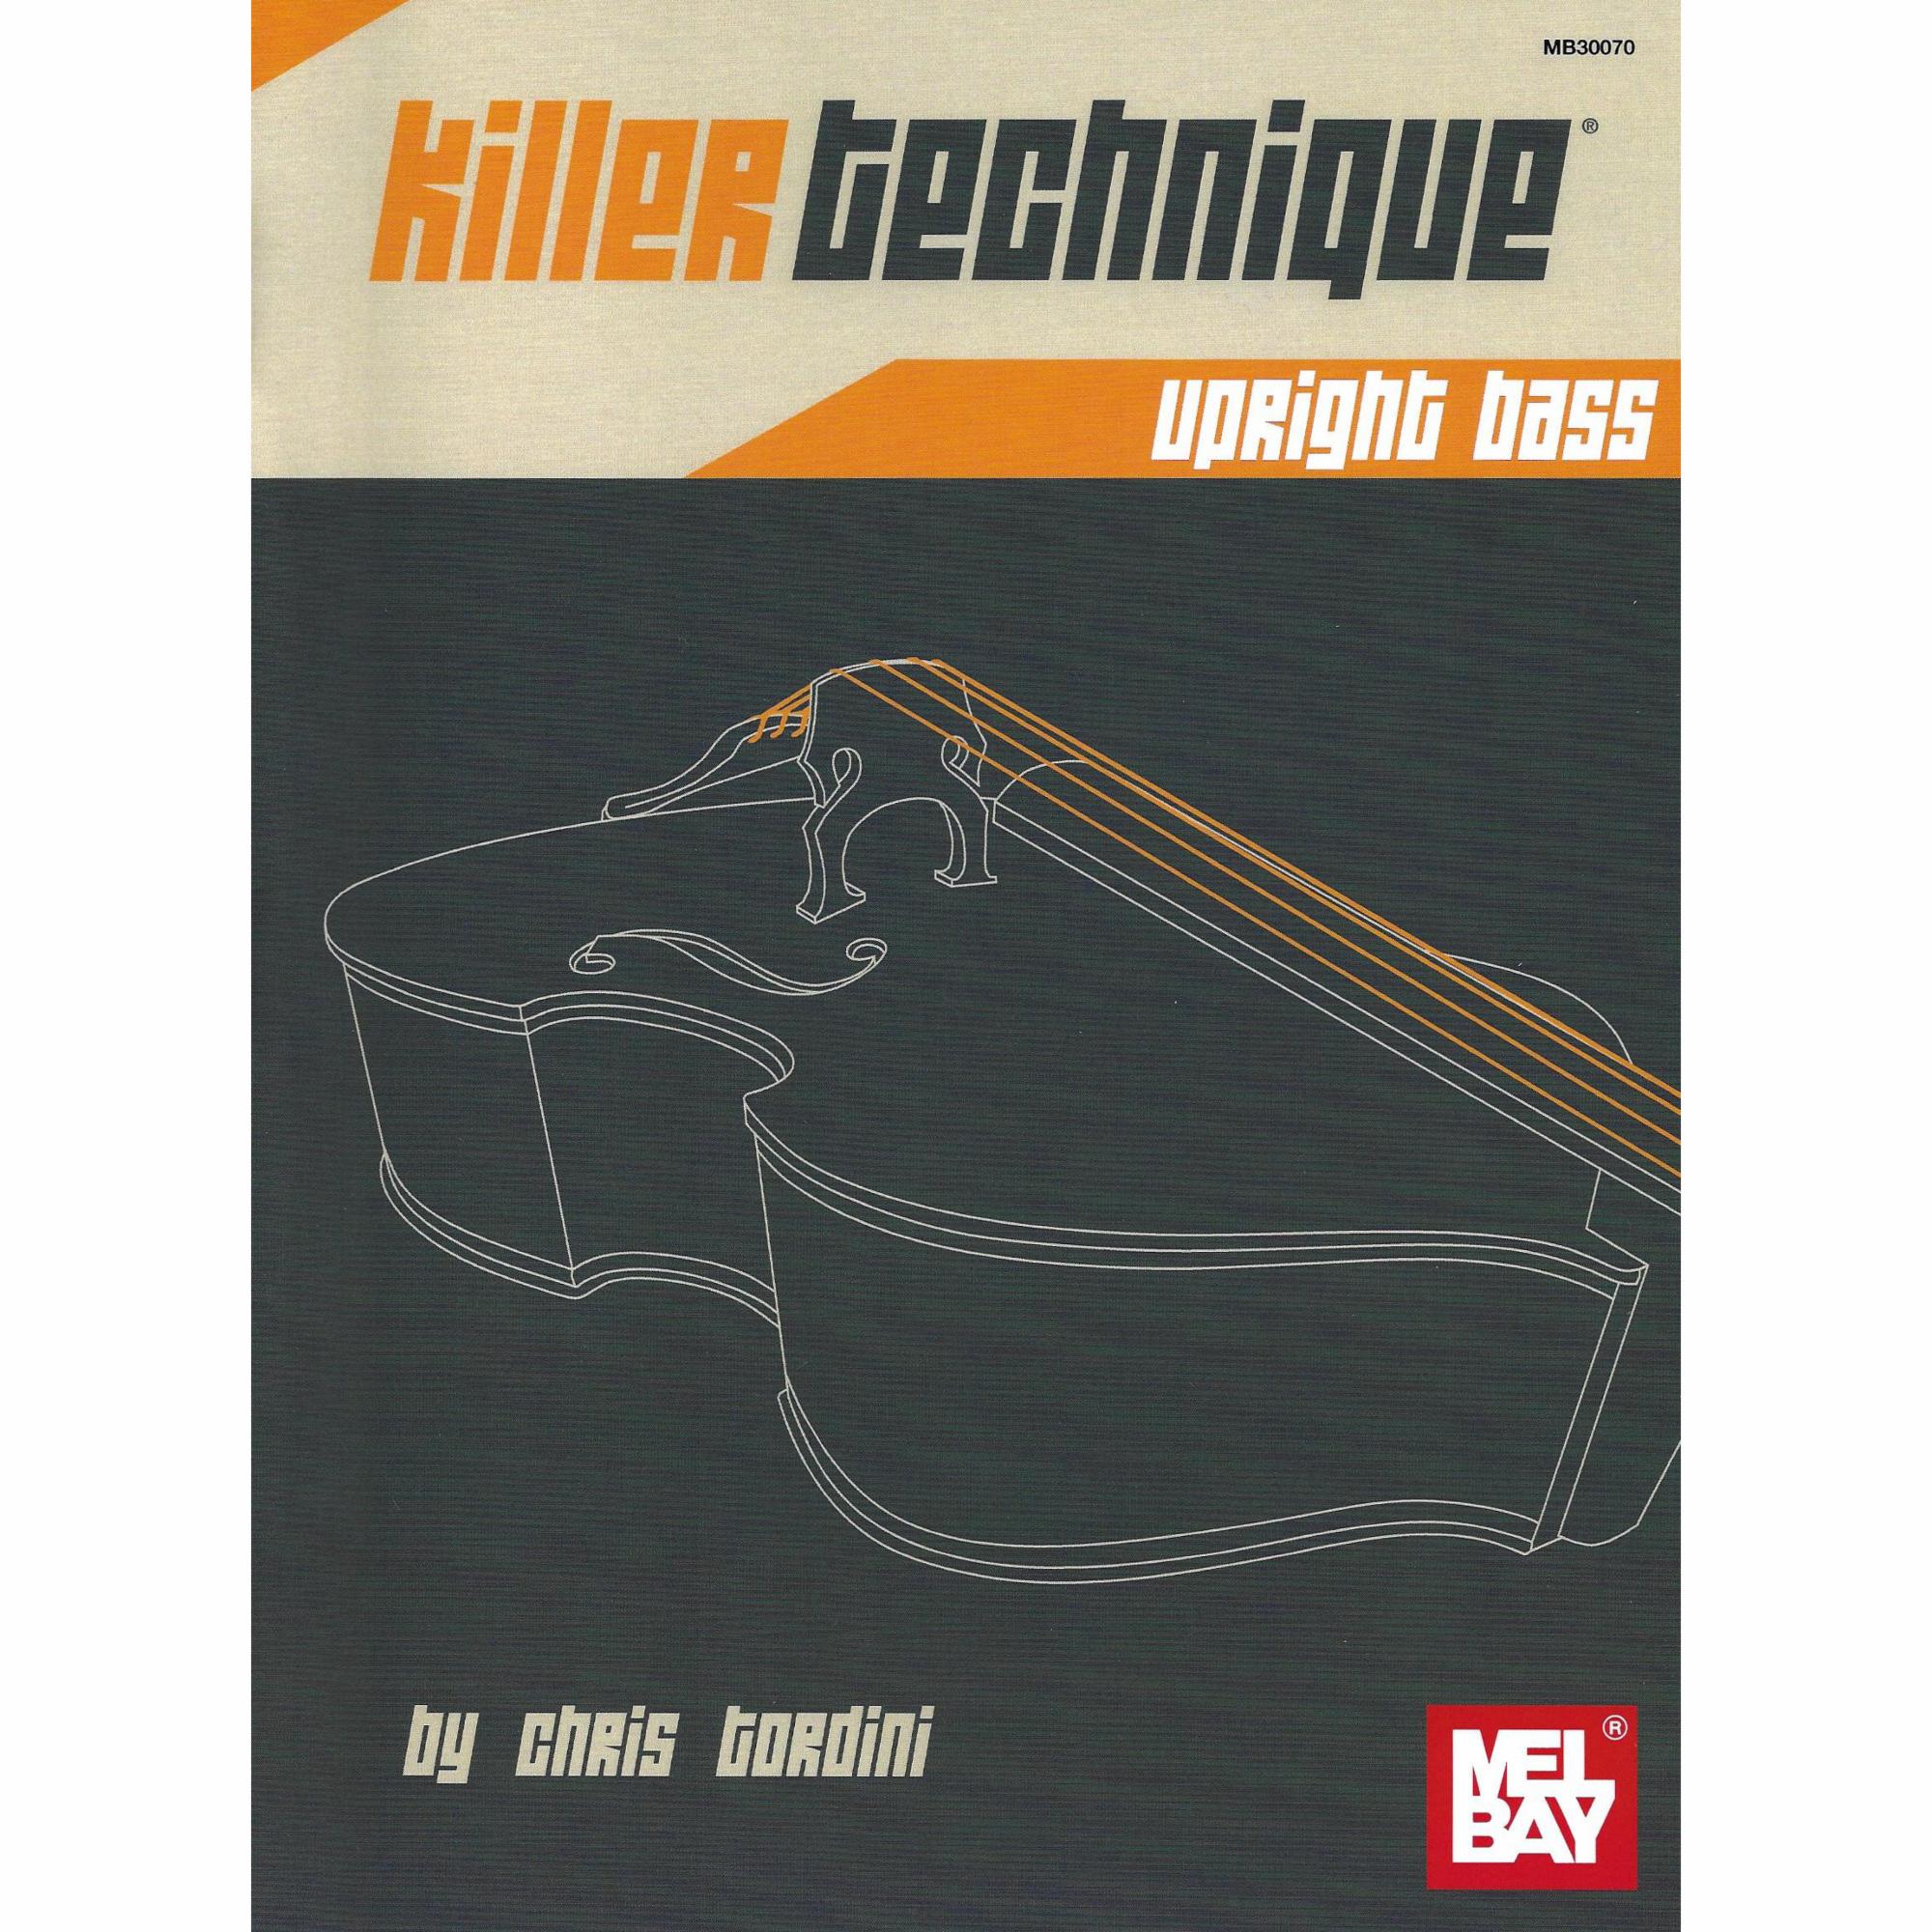 Killer Technique for Bass